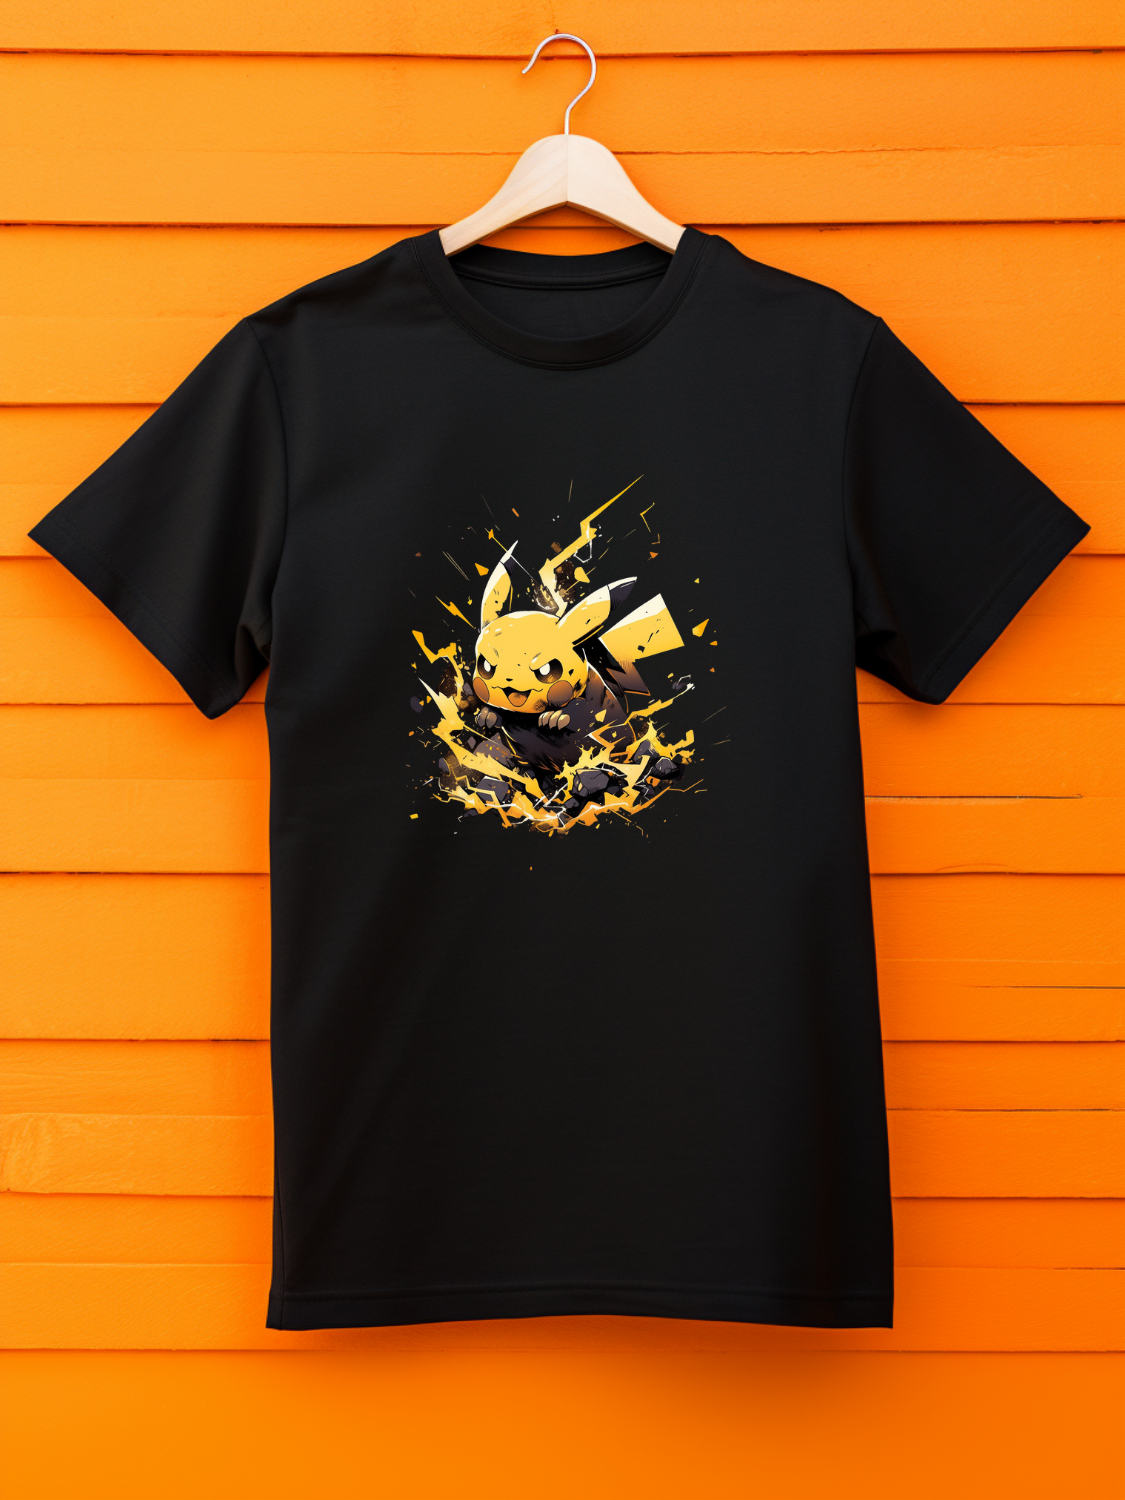 Pikachu Black Printed T-Shirt 518